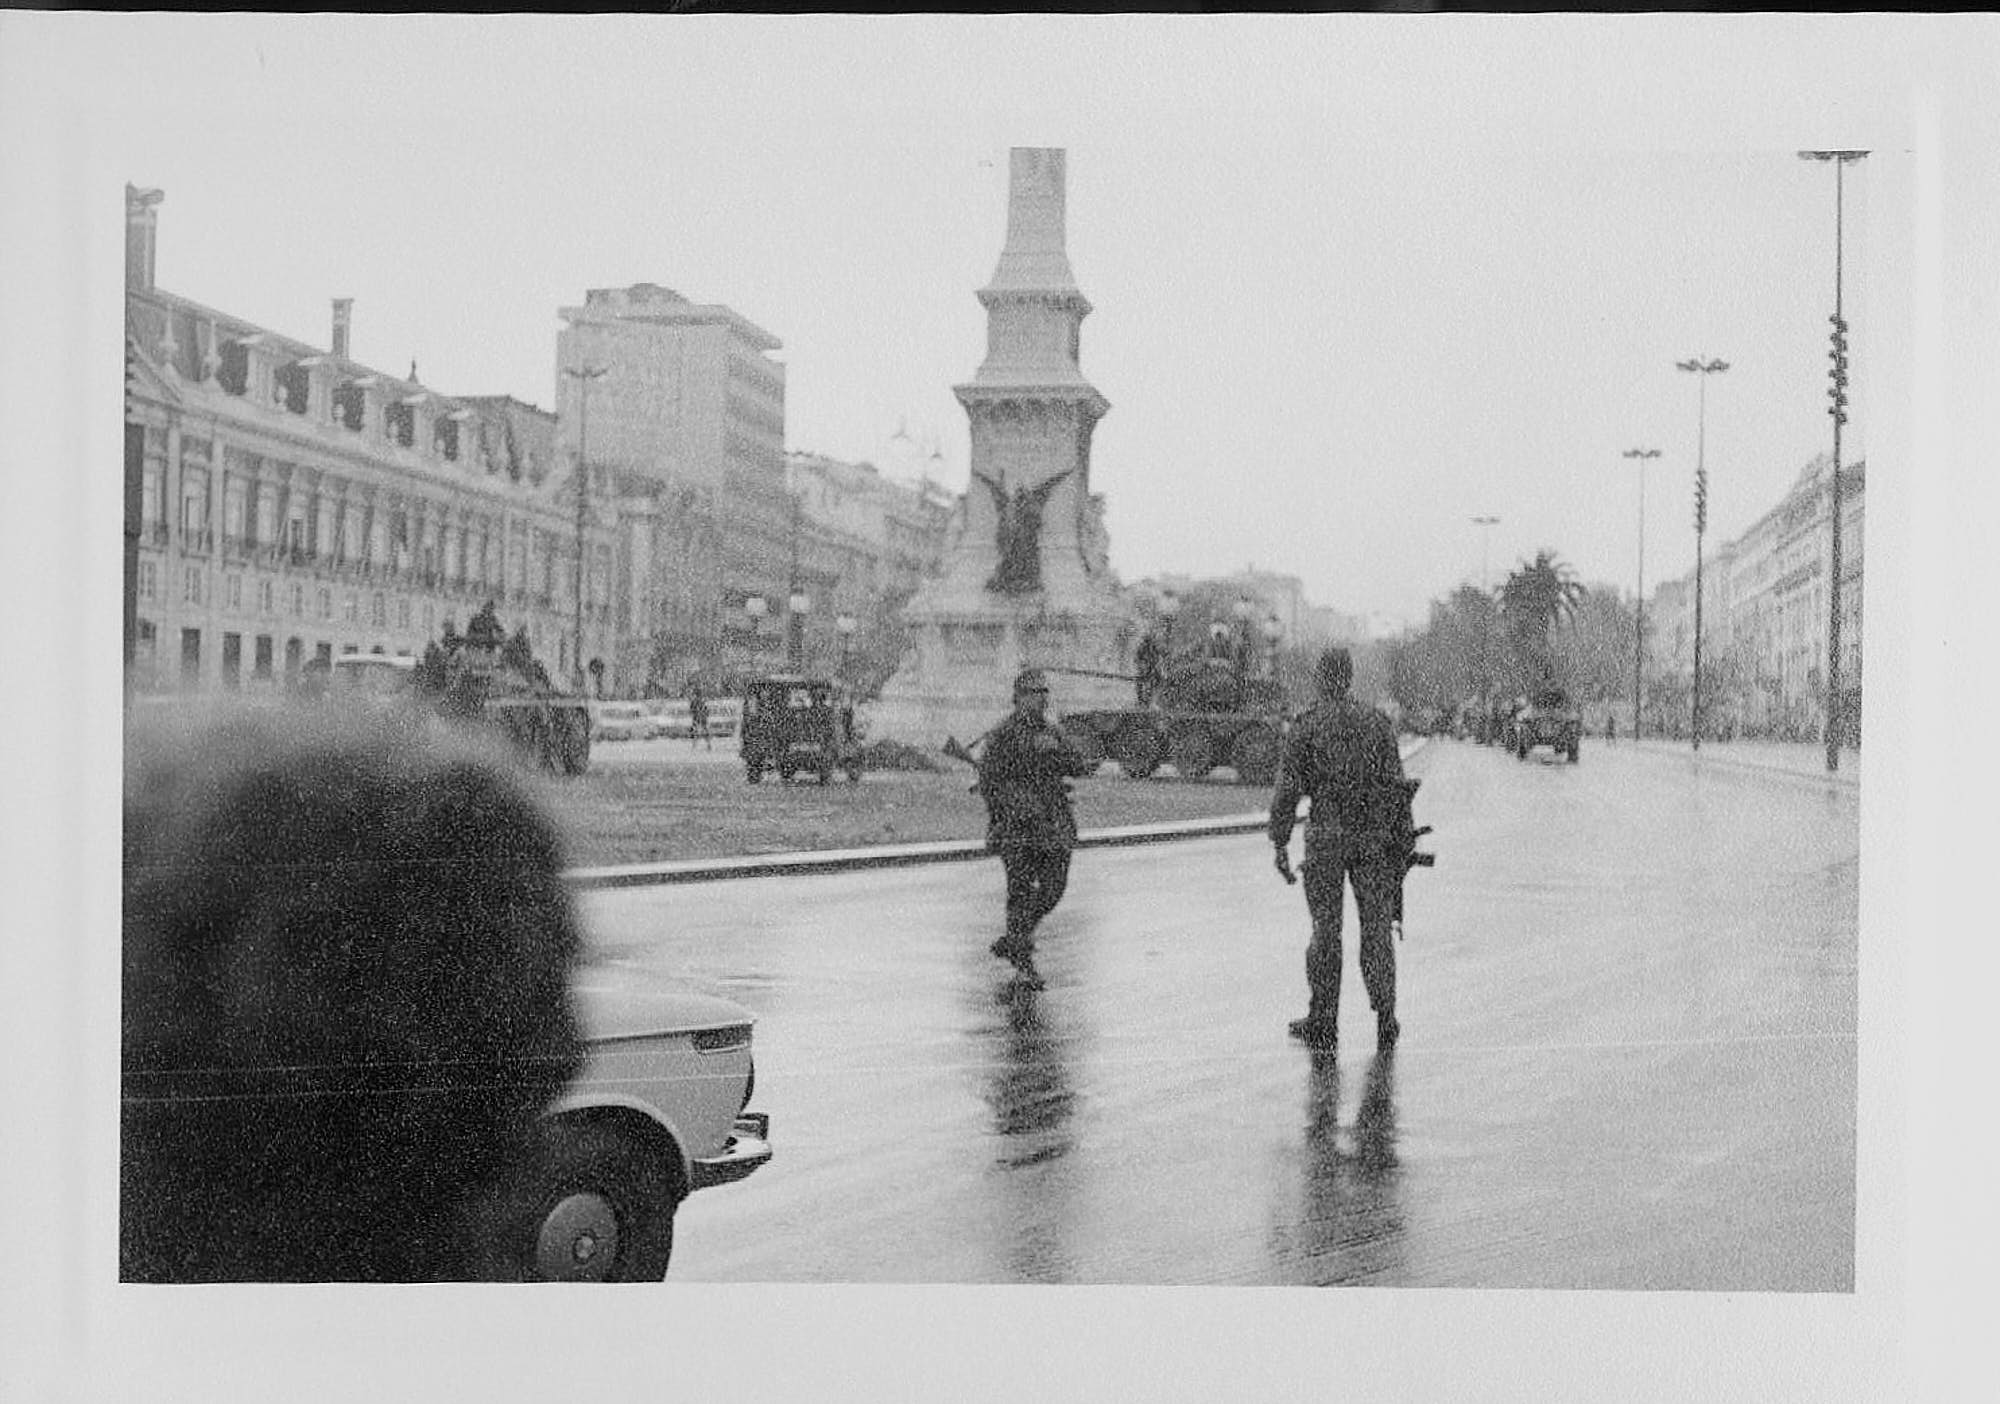 Conhecem-se poucas fotografias da Praça dos Restauradores durante a Revolução. A aparente calma sugere que a imagem foi captada ainda cedo, na manhã do dia 25